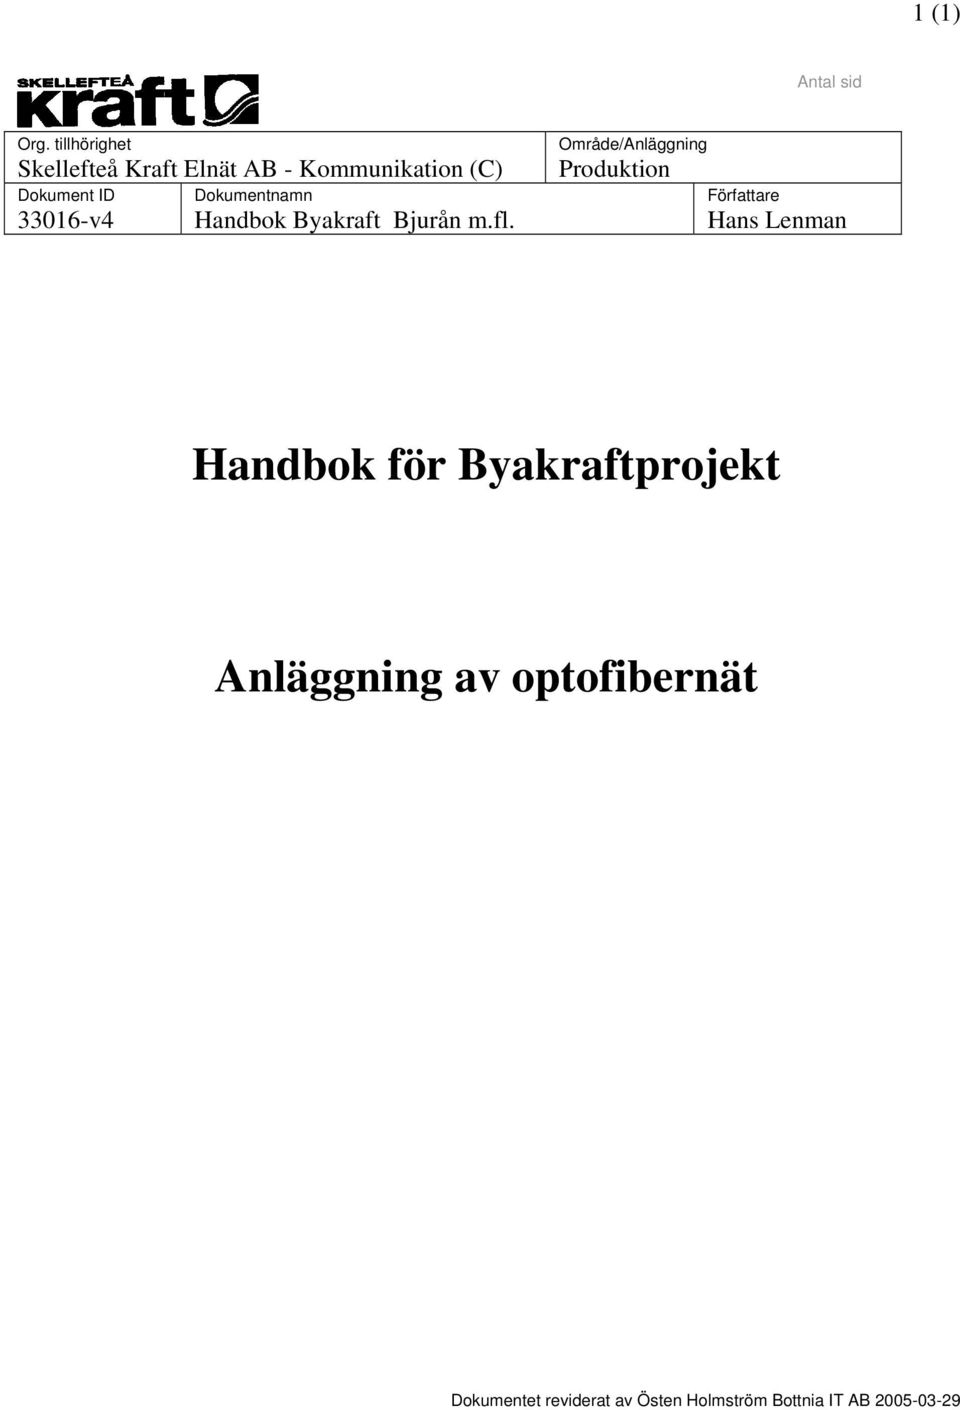 Dokumentnamn 33016-v4 Handbok Byakraft Bjurån m.fl.